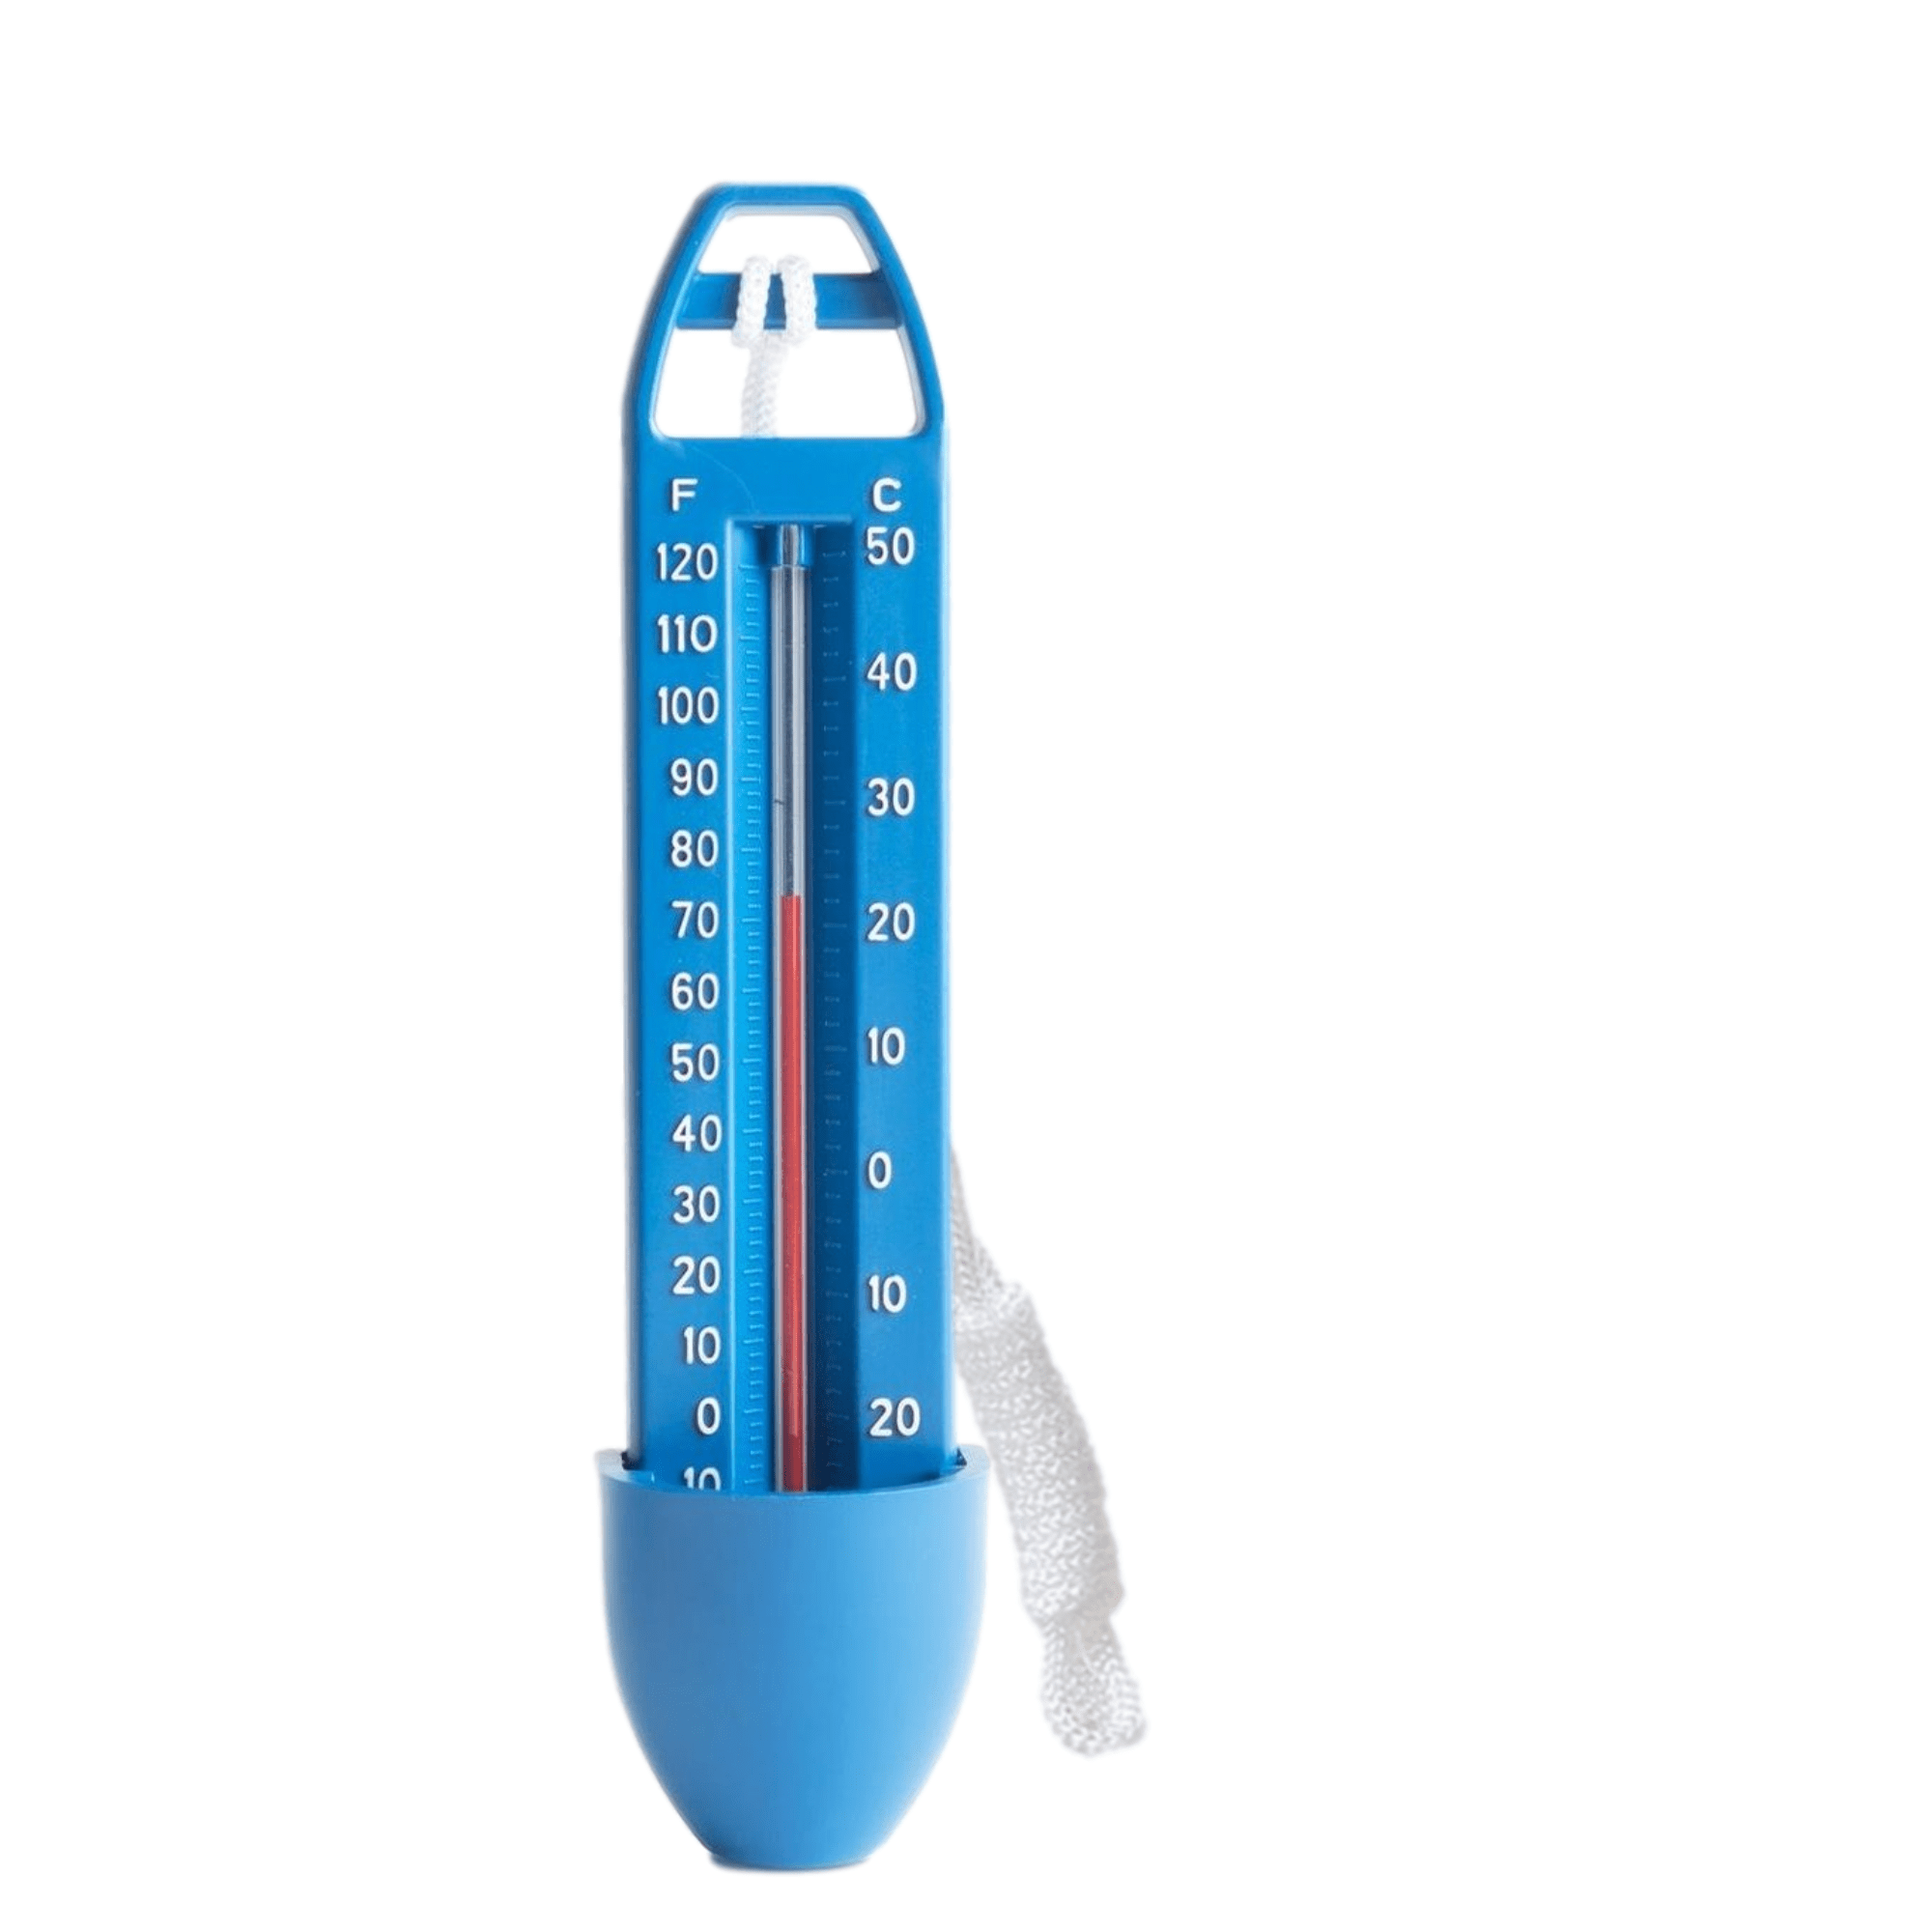 Allemaal Meesterschap Poging Zwembad Thermometer - Blauw met Touw - Water Thermometer - voor o.a. Babybad,  Bad, Zwembad, Bubbelbad - HomeShopXL